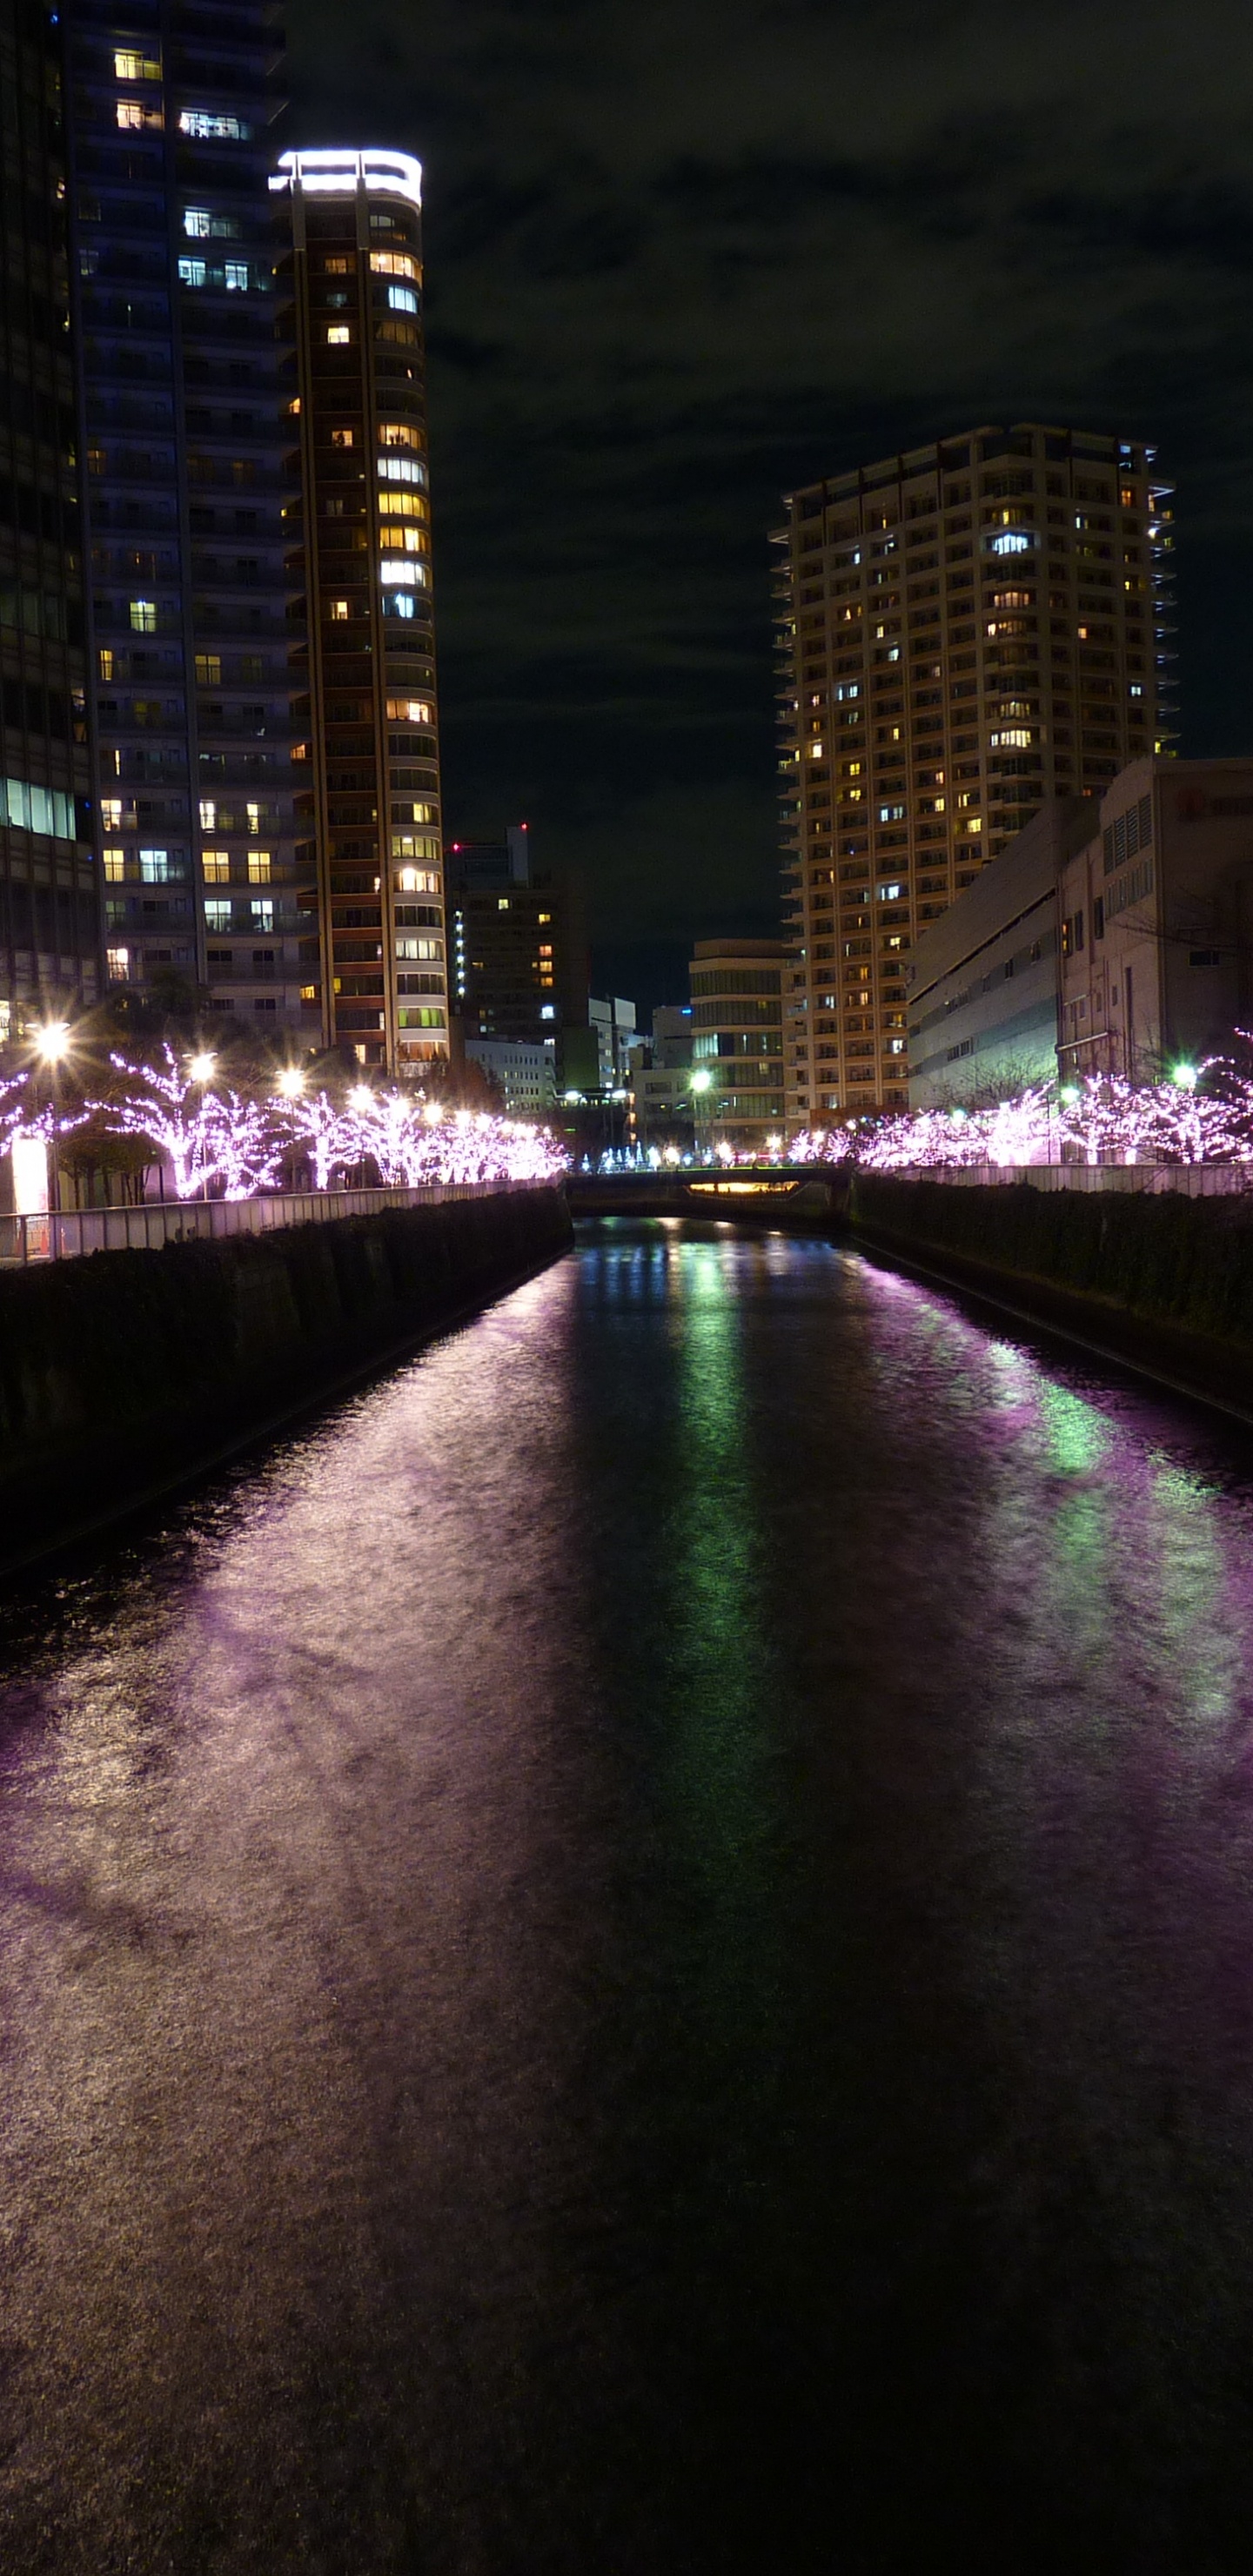 Luces Púrpuras en el Puente Durante la Noche. Wallpaper in 1440x2960 Resolution